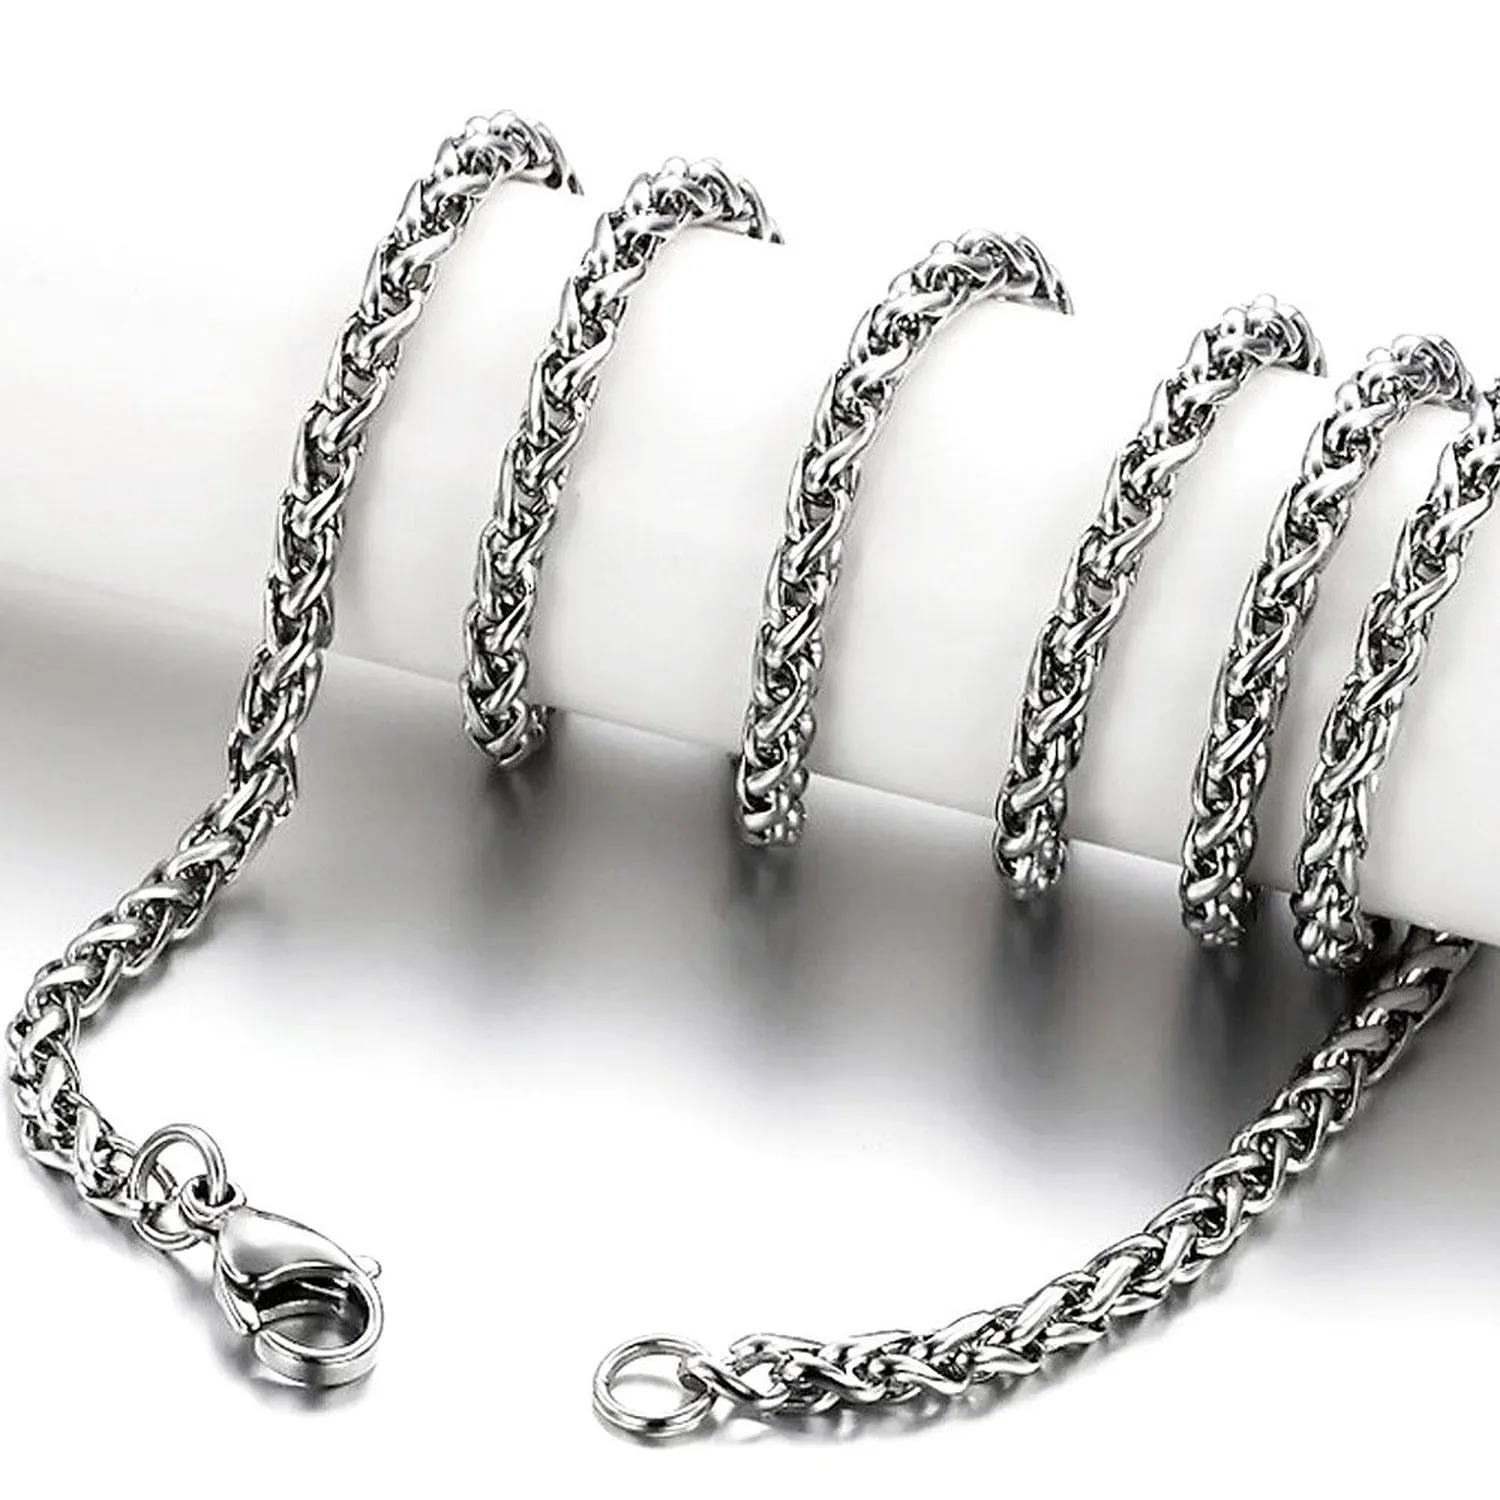 3mm4mm5mm6mm Unisex Stainless Steel Necklace Spiga Wheat Chain Link for Men Women 45cm75cm Length with Velvet Bag2152113